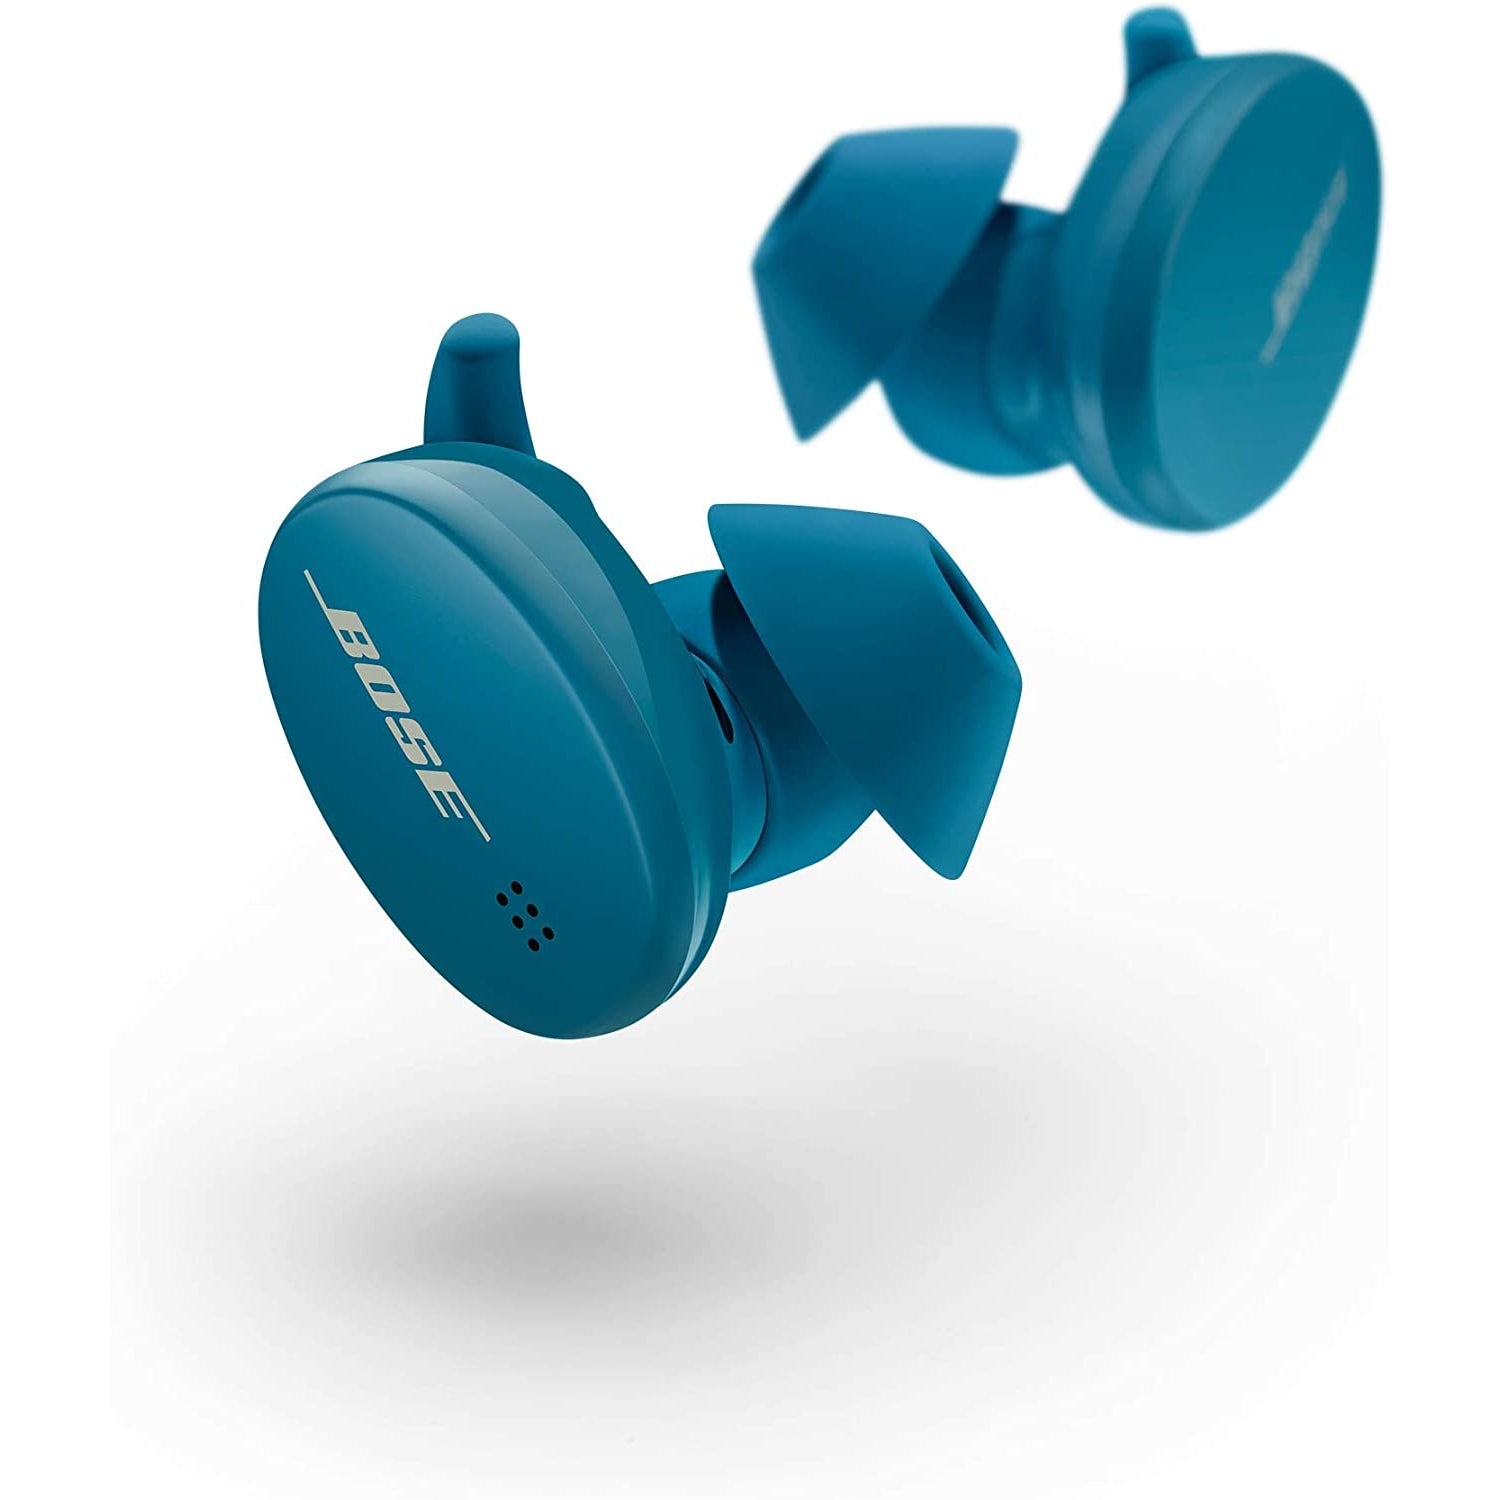 Bose Sport In-Ear True Wireless Earbuds - Baltic Blue - Refurbished Good